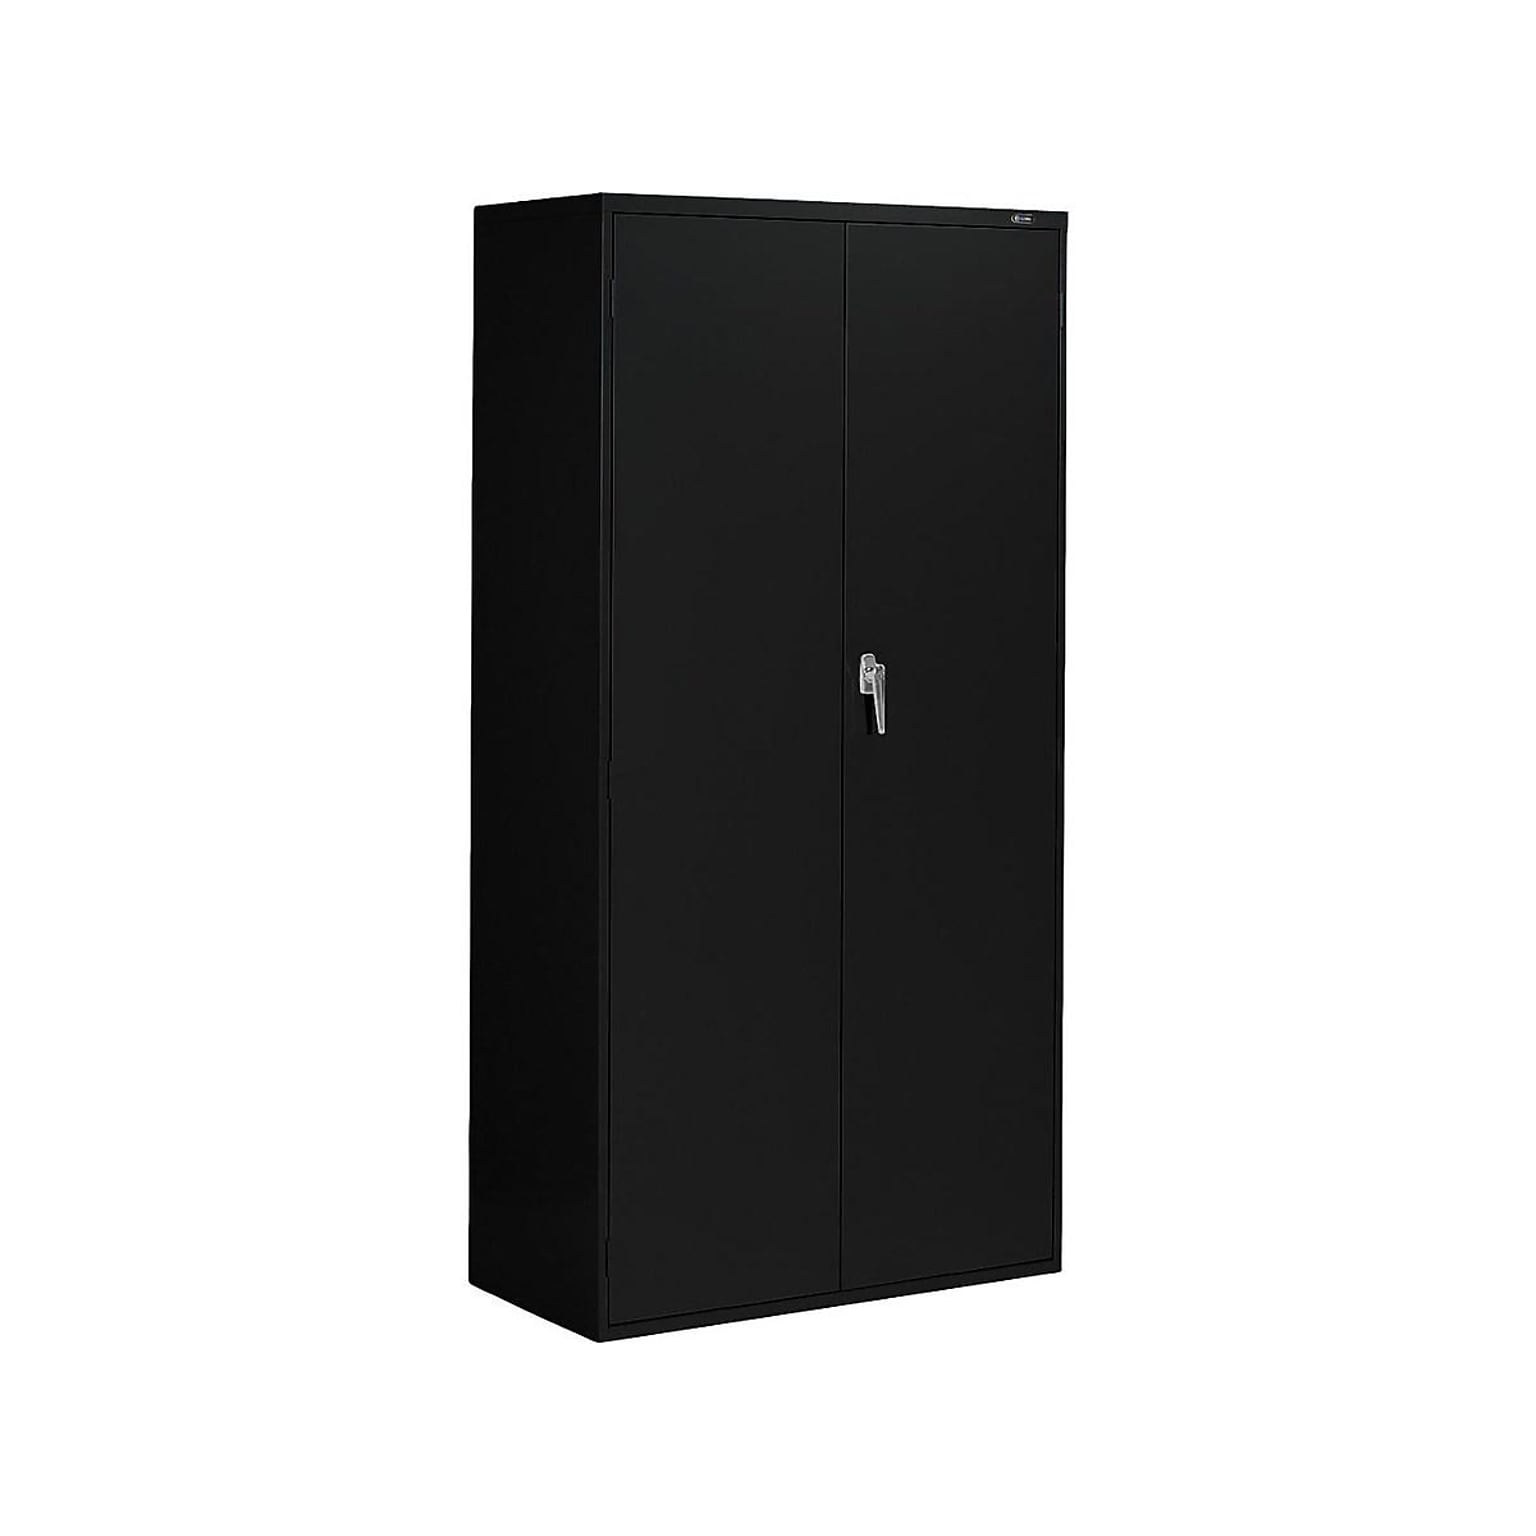 Global 9300 72 Steel Storage Cabinet with 4 Shelves, Black (9336-S72L-BLK)